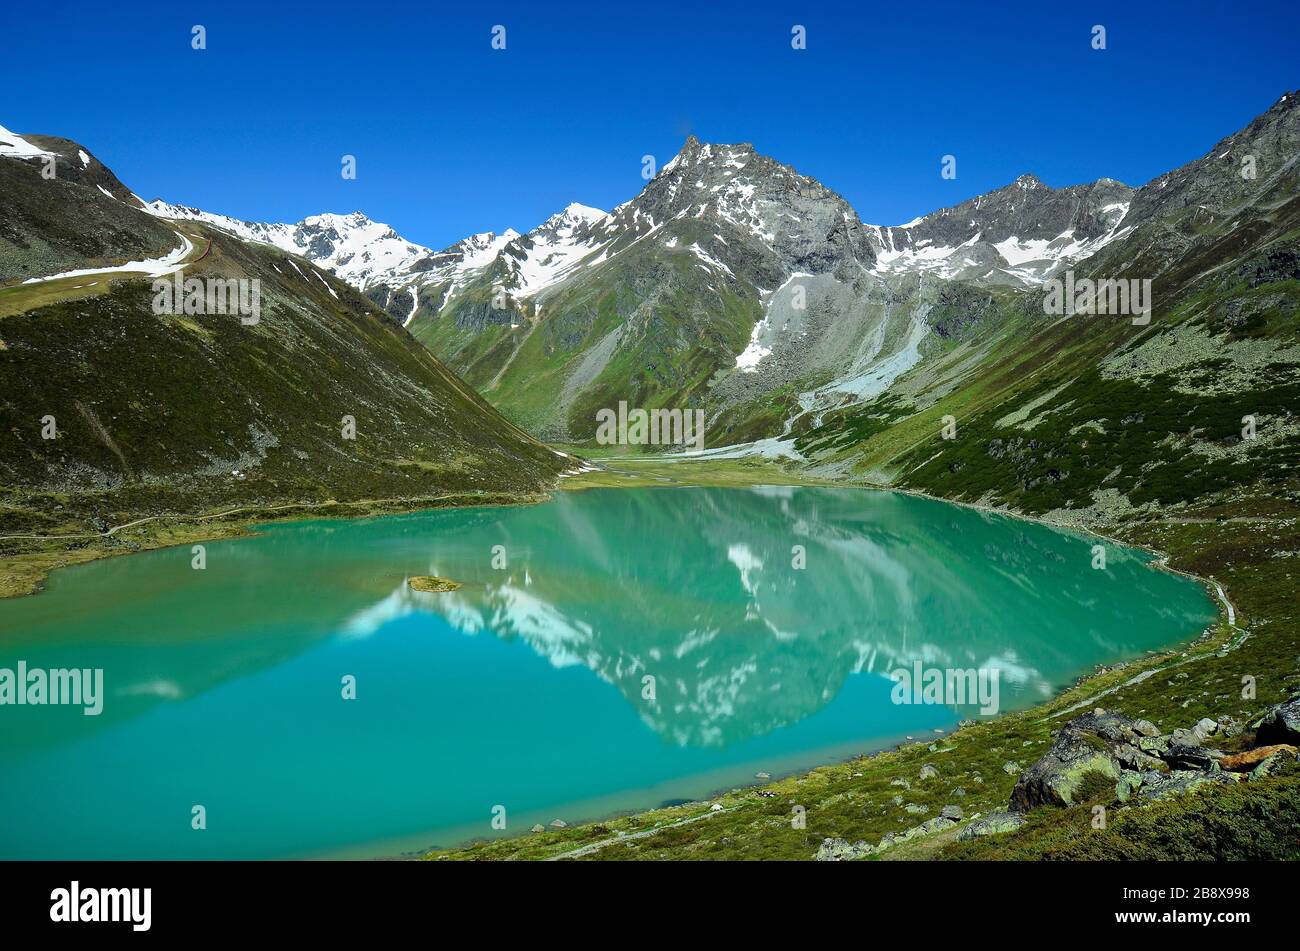 Austria, Tirolo, Rifflsee - Lago e neve rimane nelle Alpi tirolesi, zona preferita per lo sci ed escursionismo Foto Stock